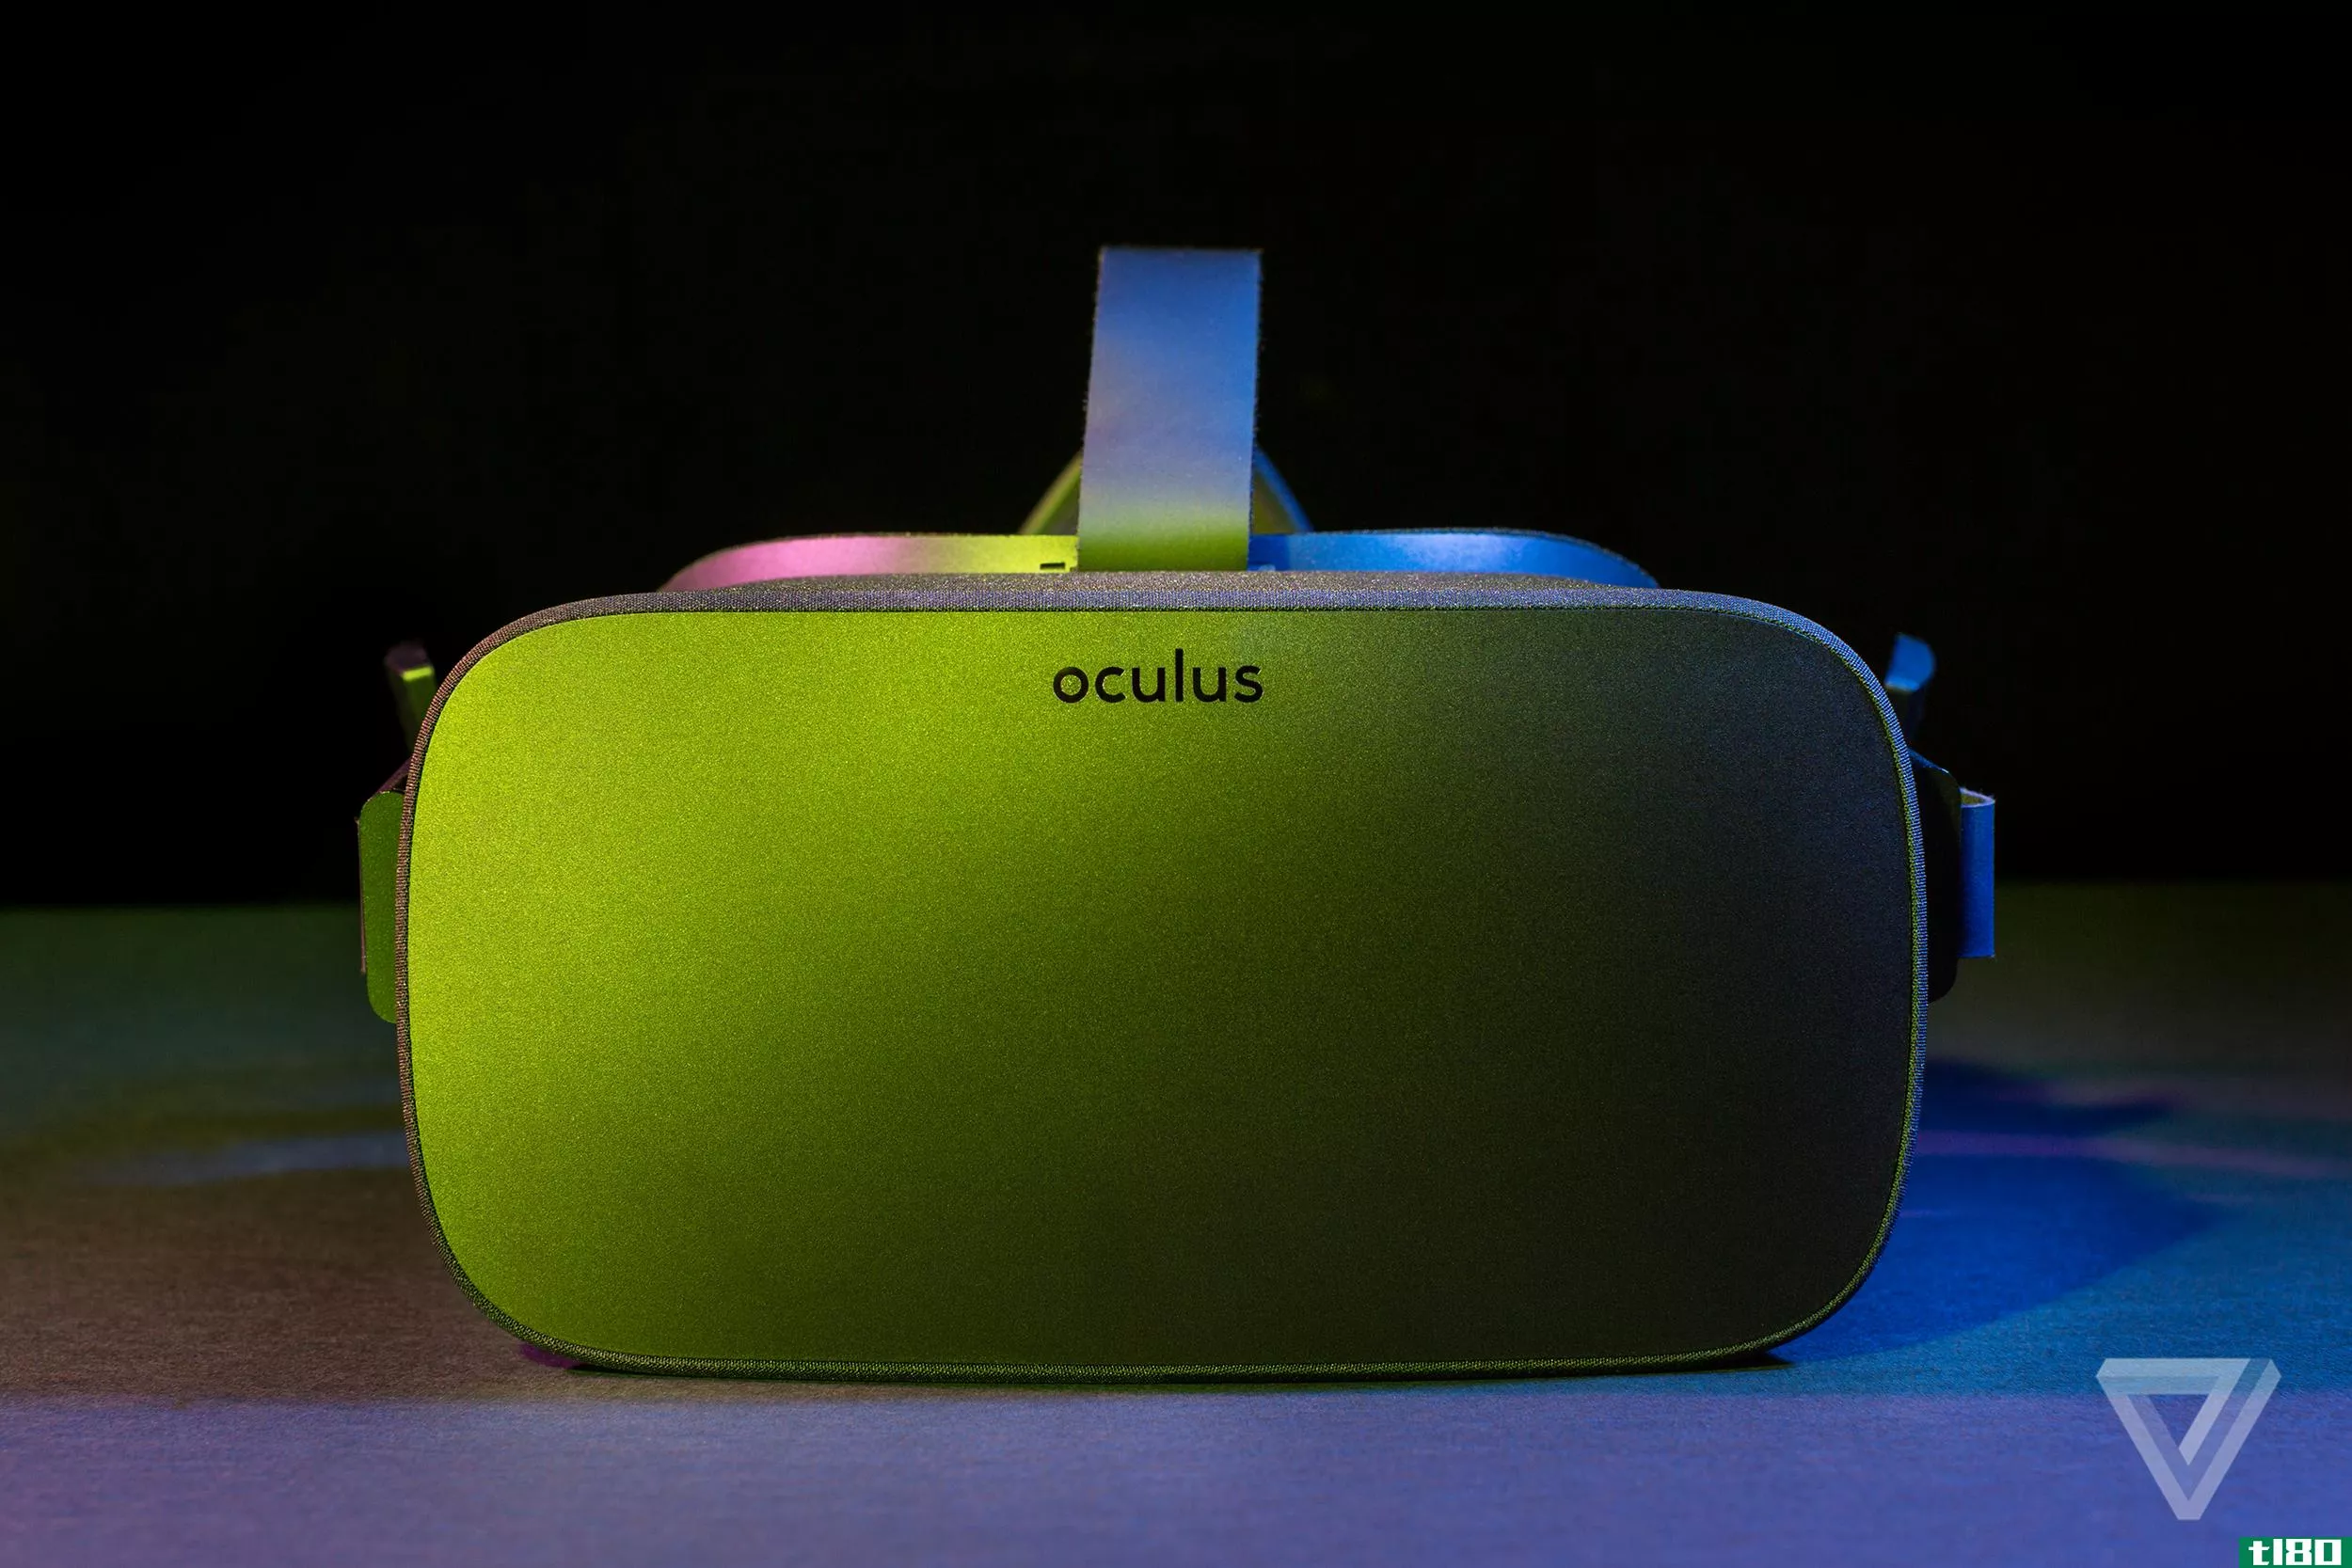 你现在可以在虚拟现实中的oculus rift上观看hulu